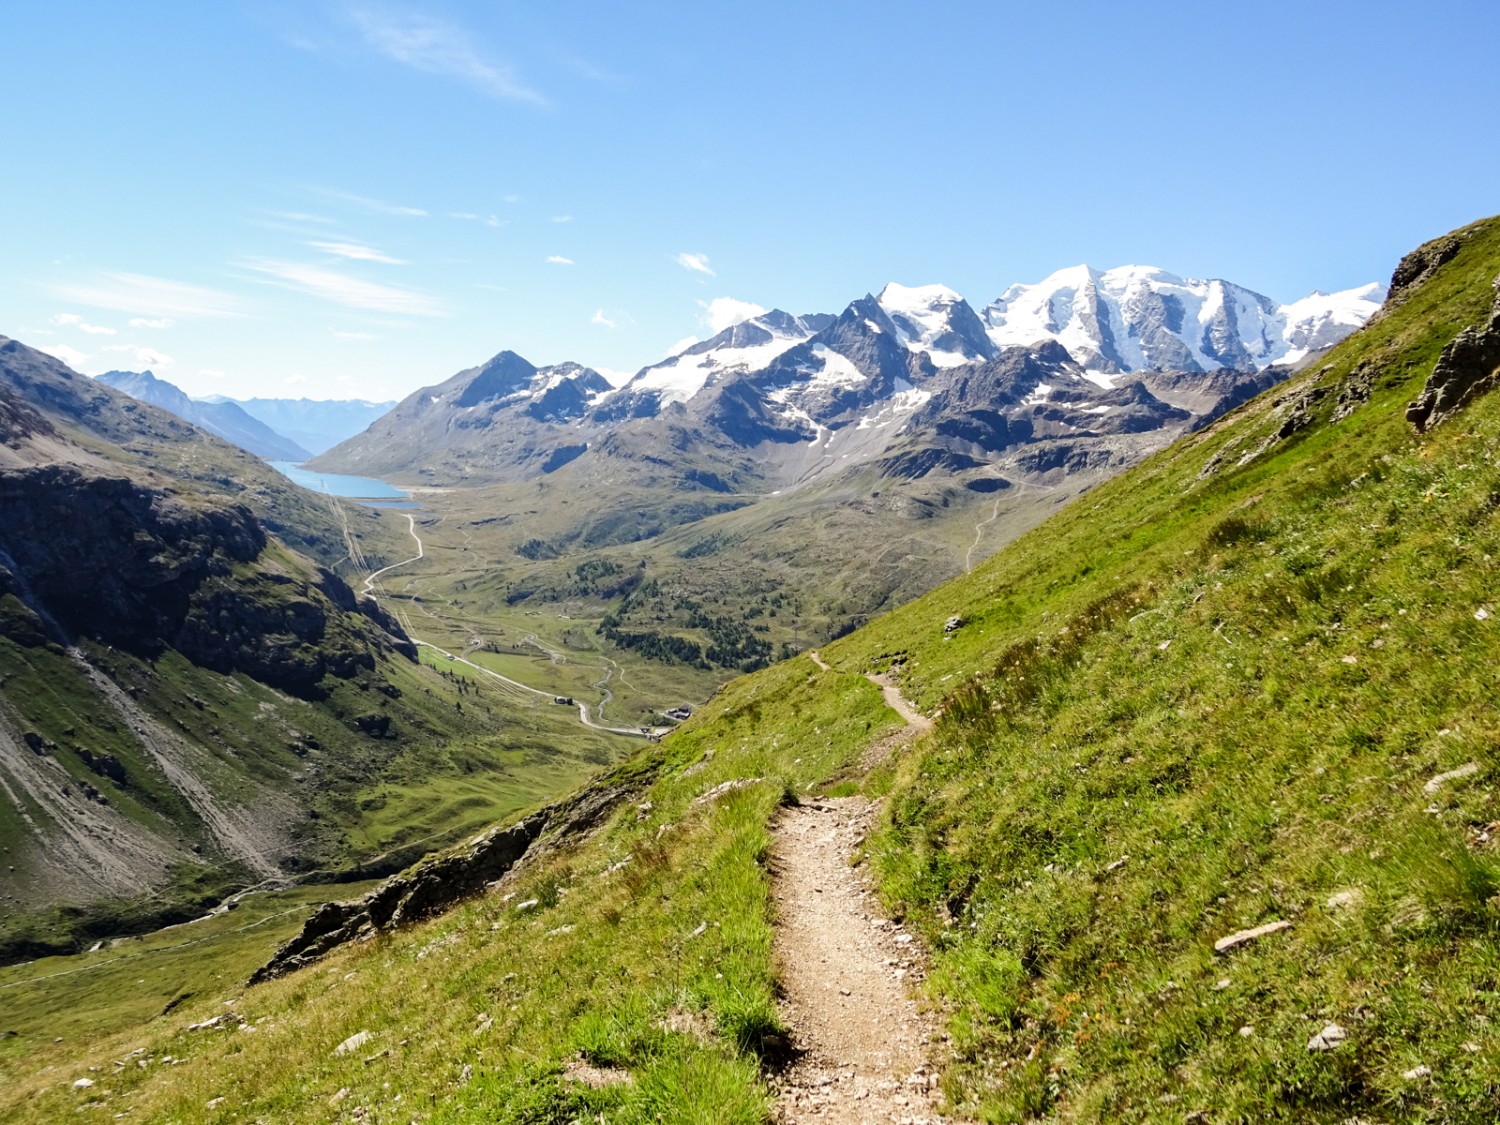 Aussicht zum mehrgipfligen Piz Palü, zum Piz Cambrena links davon und zum Lago Bianco auf der Berninapasshöhe. Bild: Sabine Joss